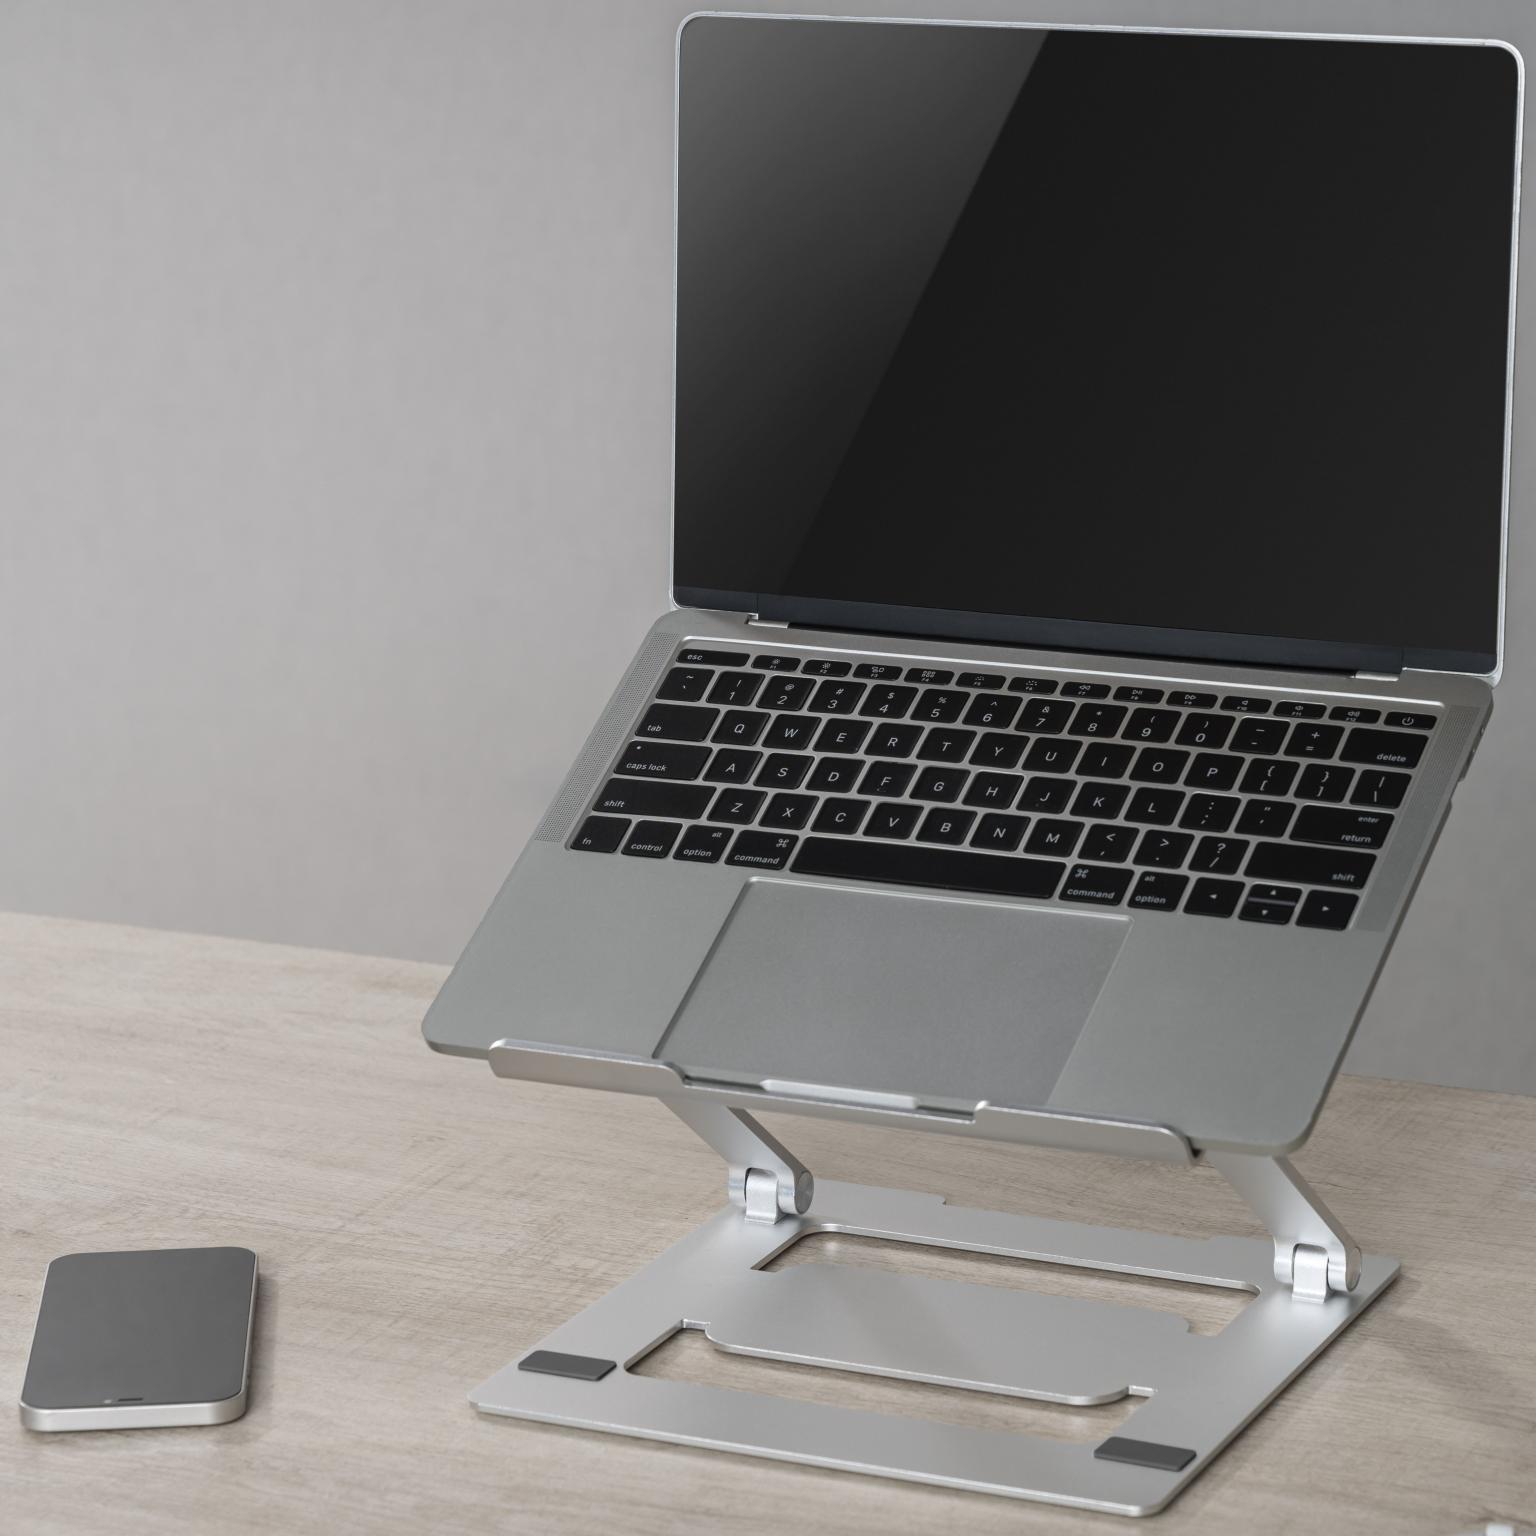 Laptop steun - Schermformaat: 11 inch, Afmetingen: 240x240x44mm Materiaal: Aluminum, siliconen pad